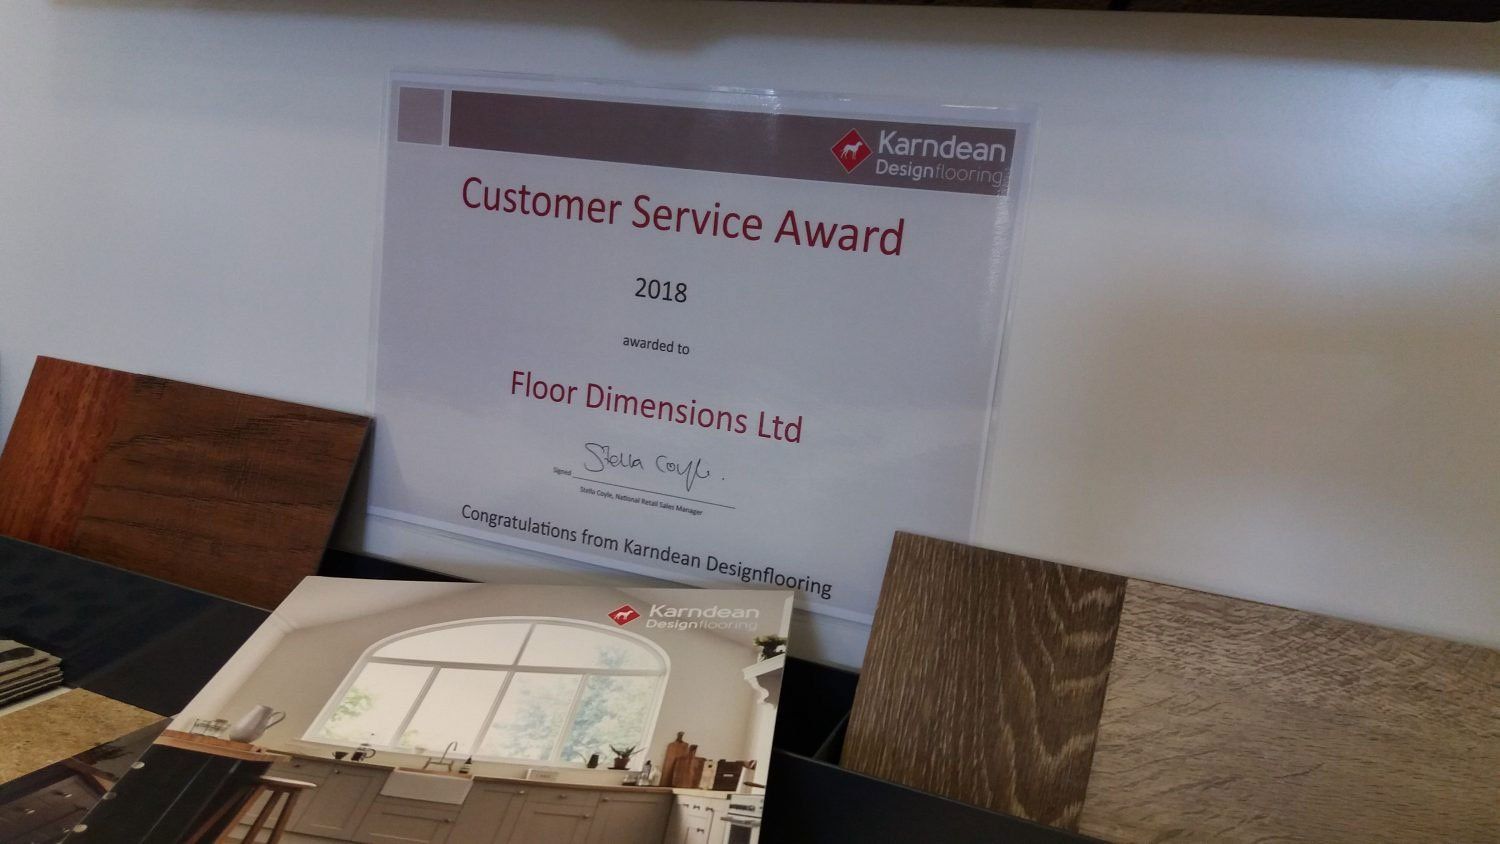 2018 Karndean Customer Service Award